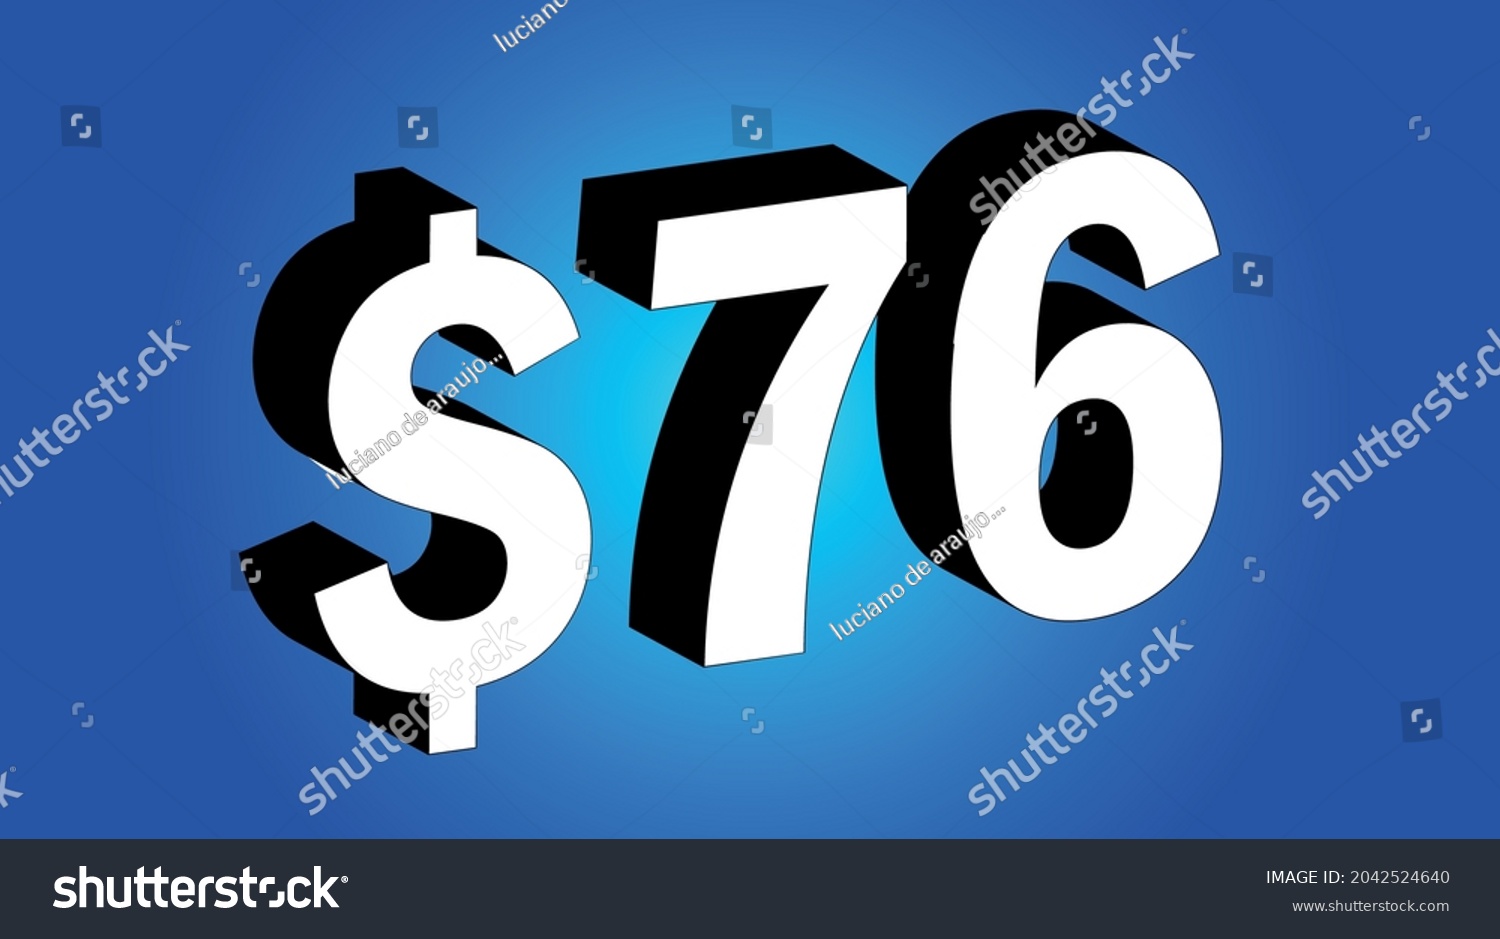 SVG of 76 Dollar - $76 3D Blue Price Symbol Offer svg